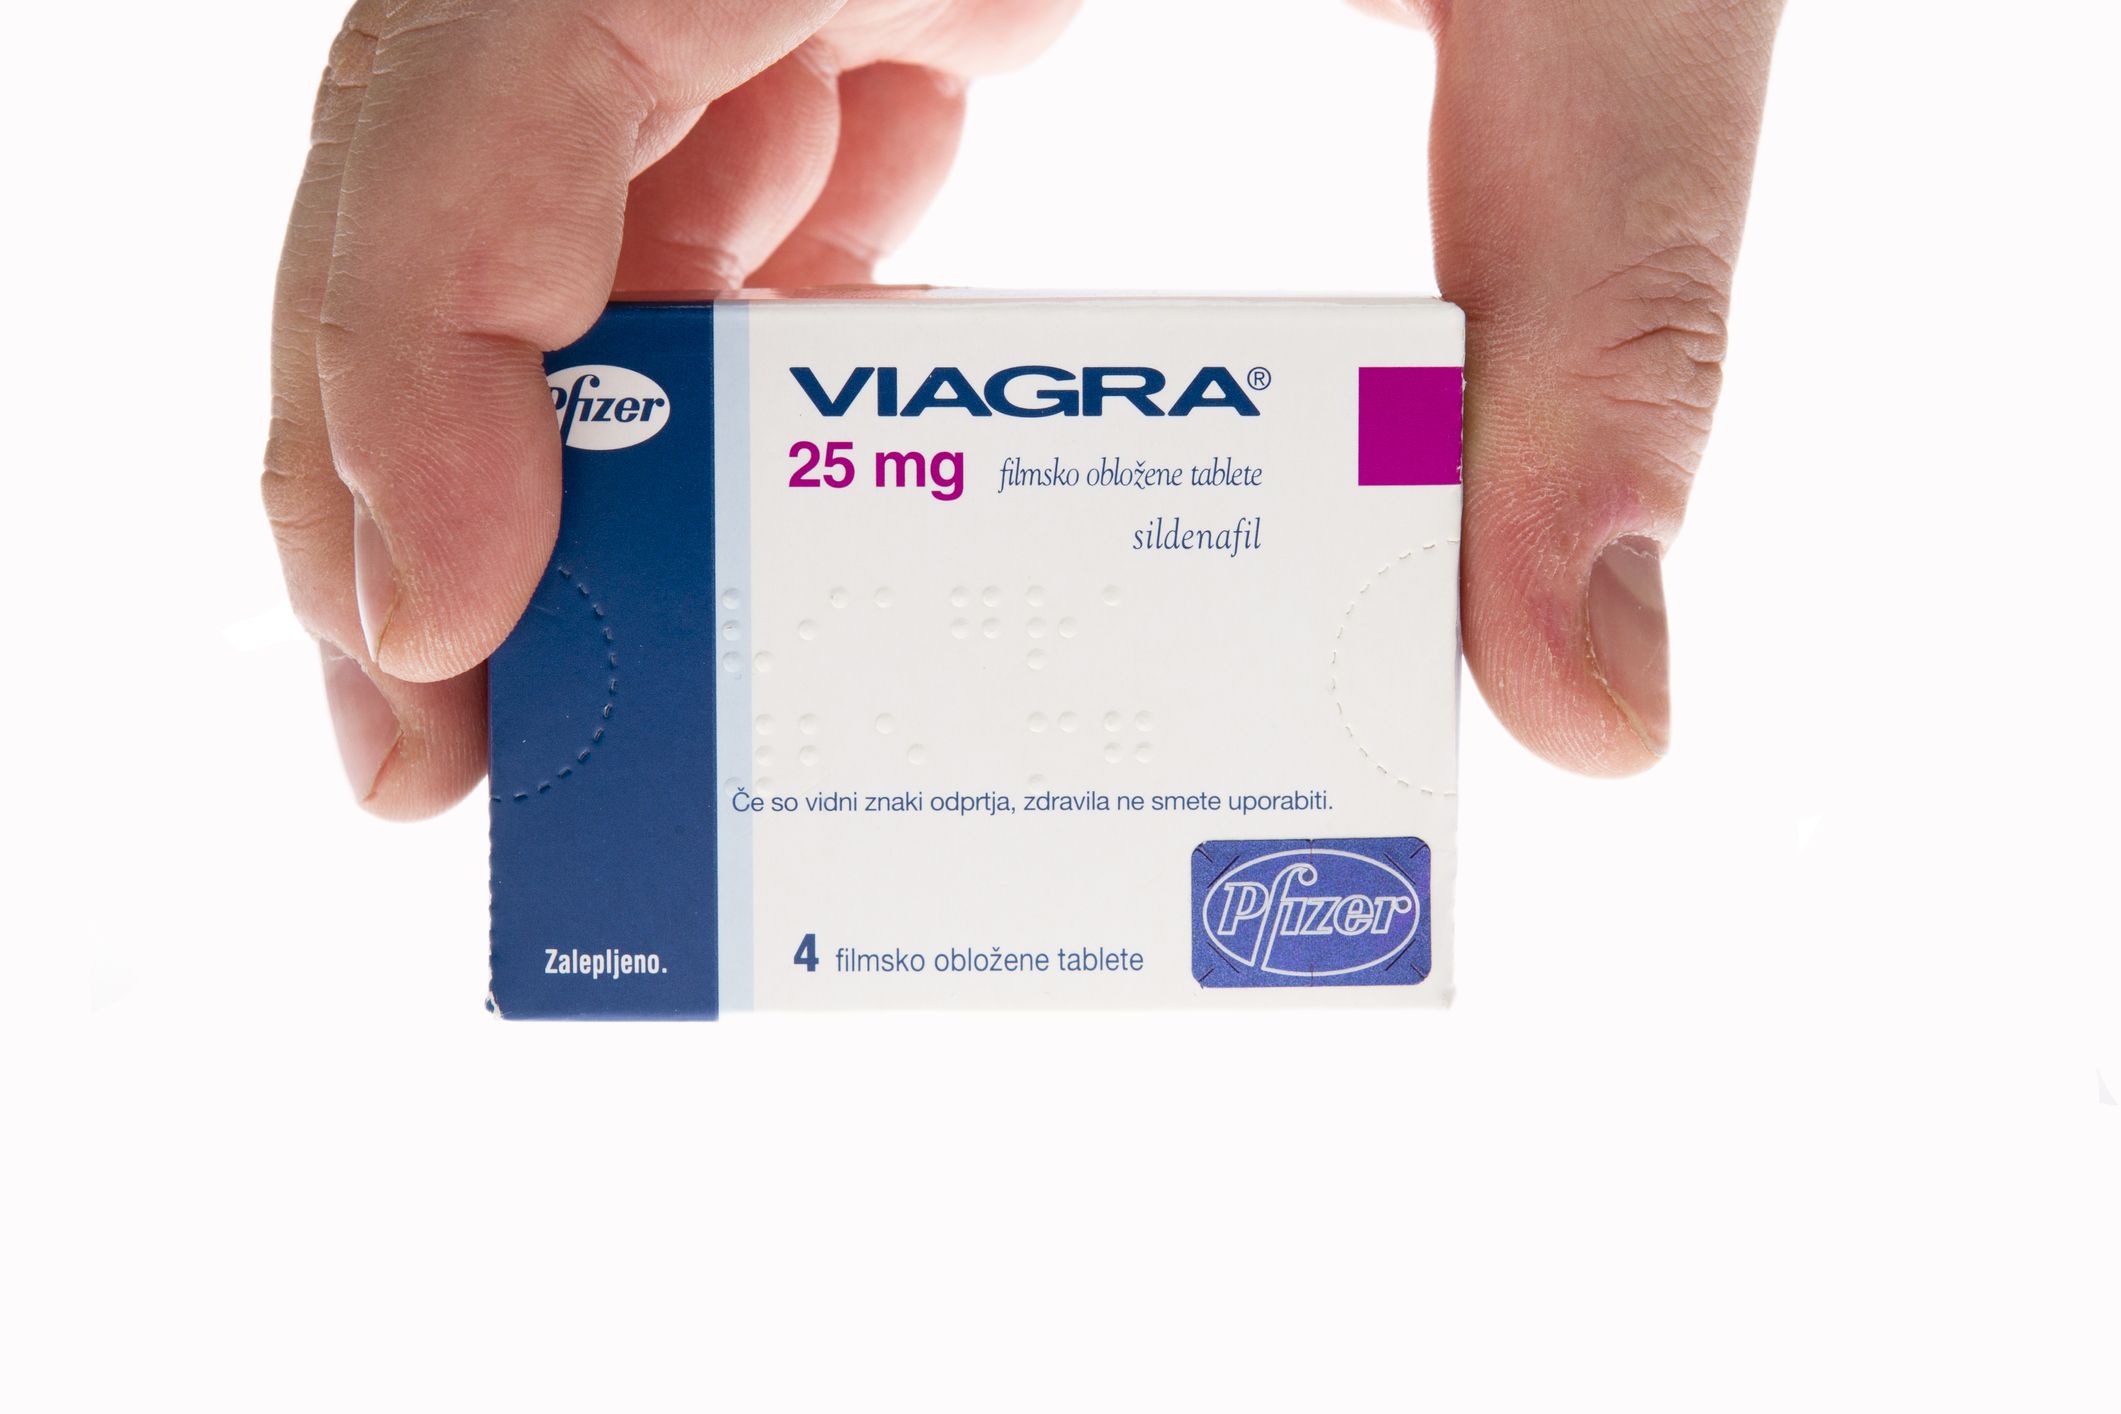 használhatja a Viagrát magas vérnyomás esetén